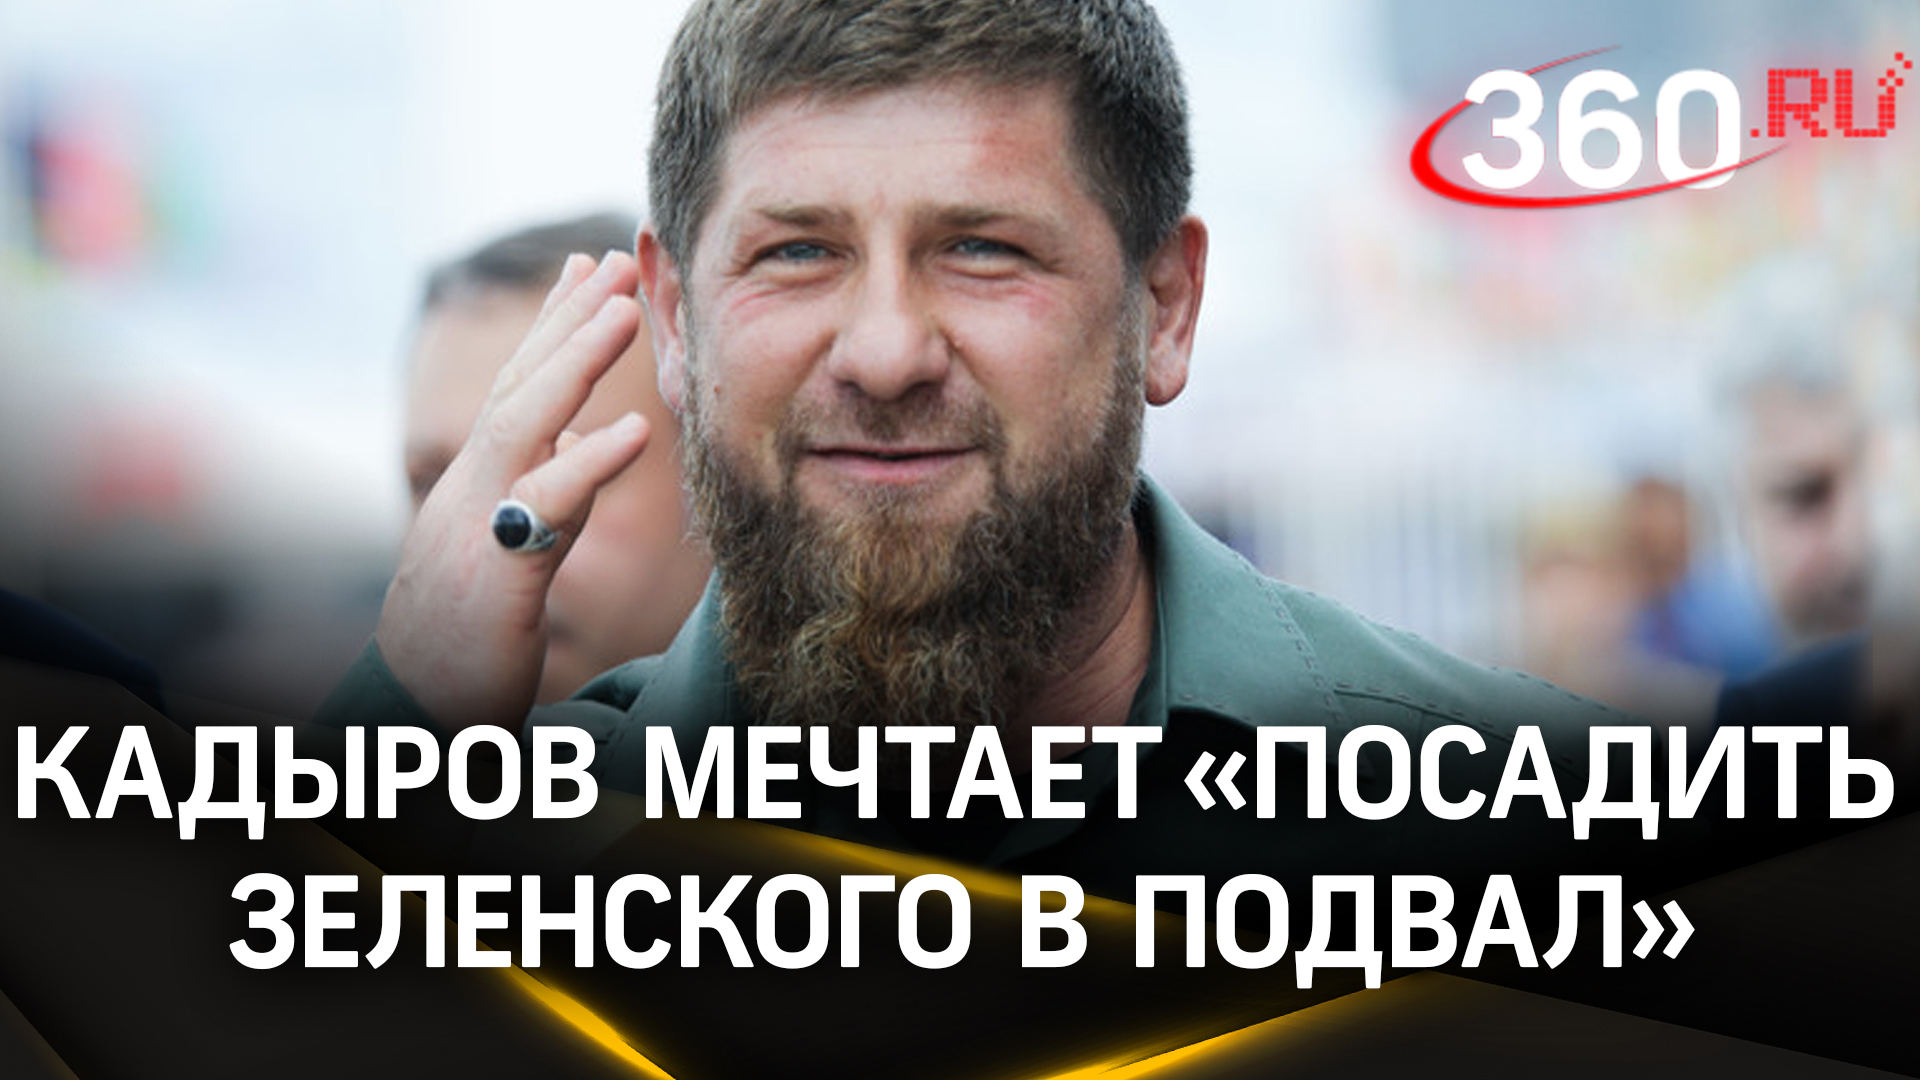 Кадыров хочет посадить Зеленского в подвал в Чечне